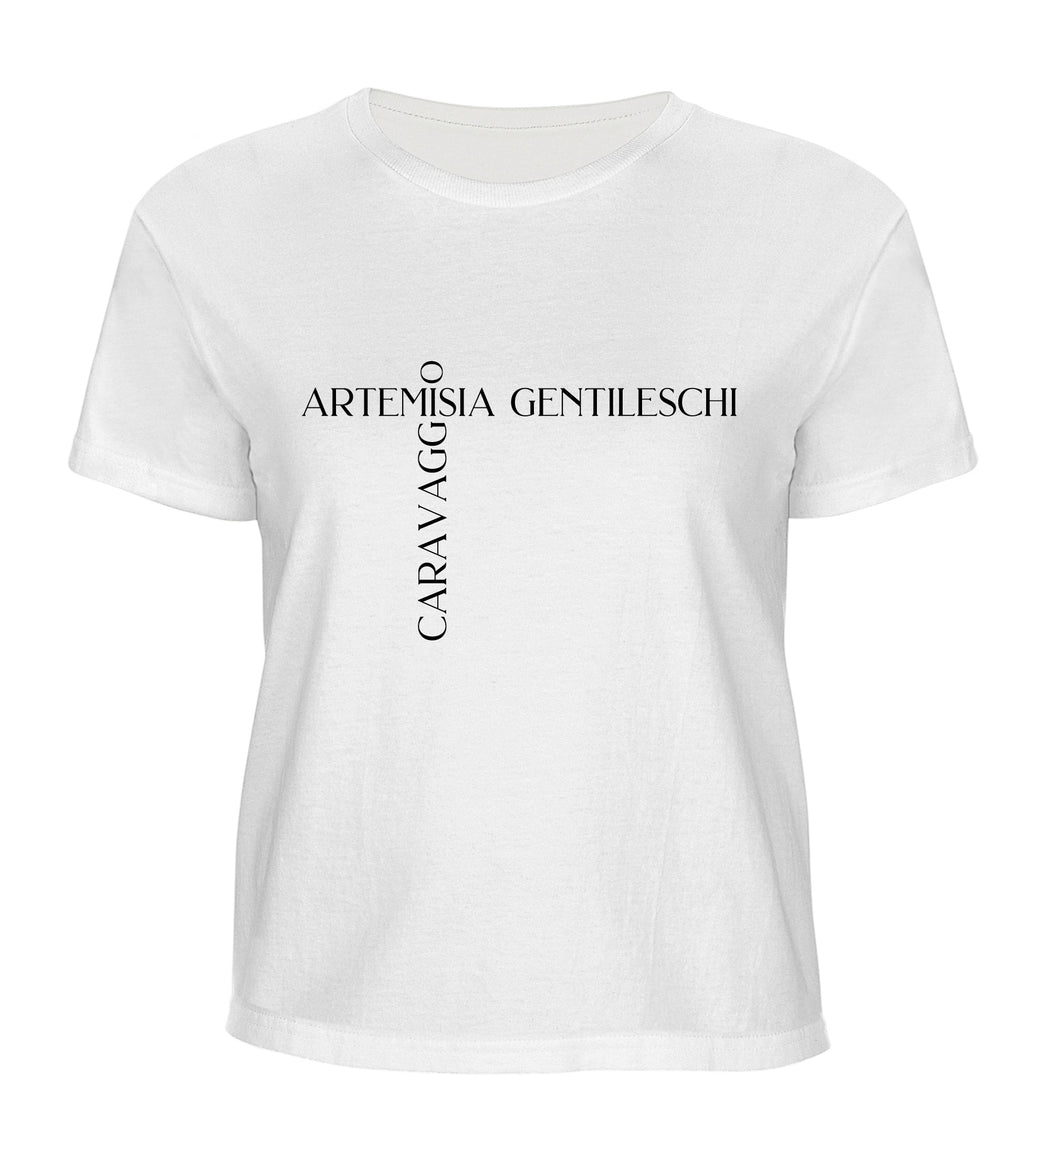 Artemisia Gentileschi - Caravaggio T-shirt 